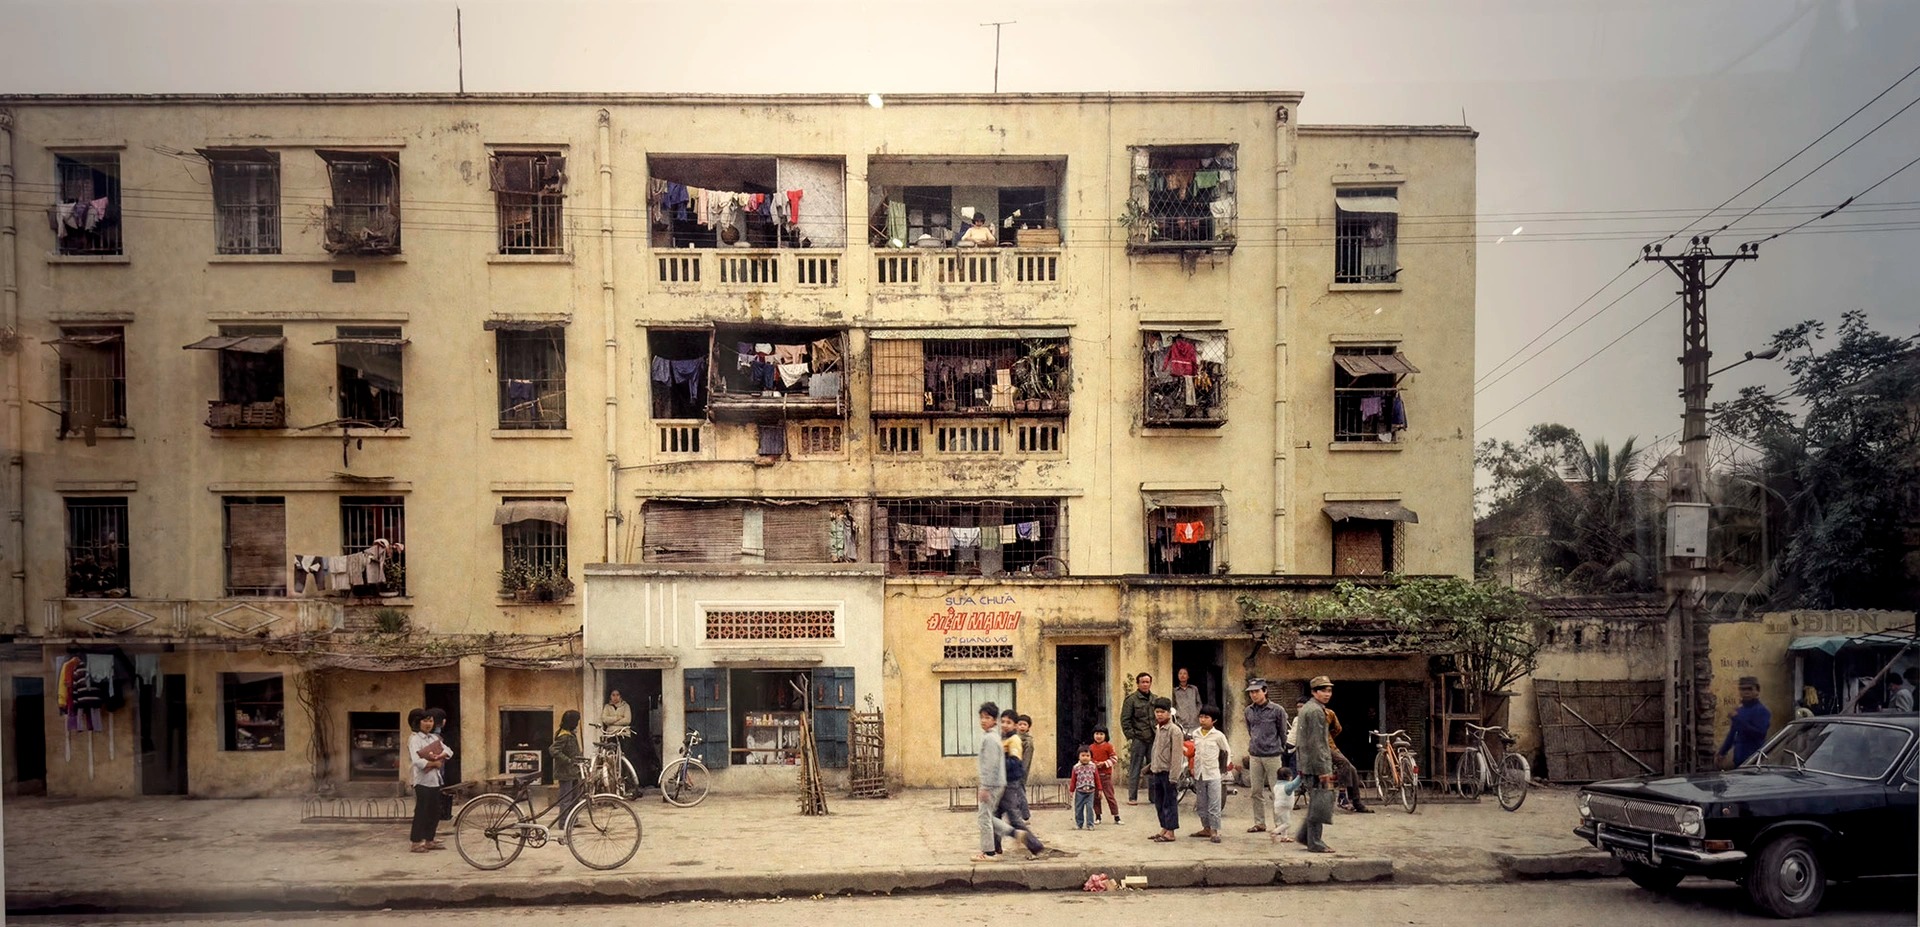 Những bức ảnh màu hoài niệm về Hà Nội một thời gian khó những năm 80 - Ảnh 3.